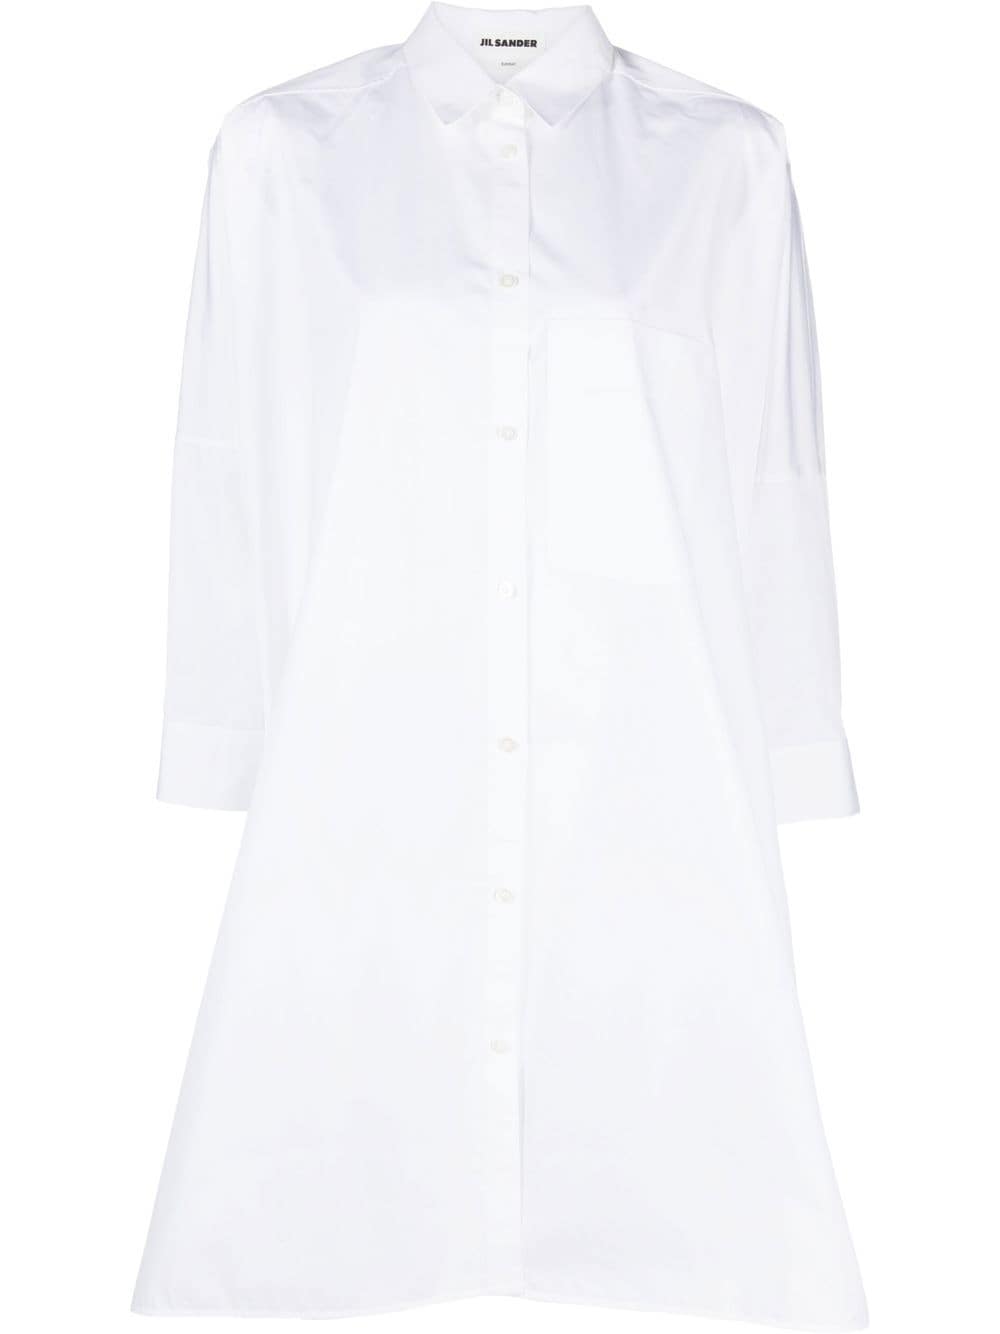 JIL SANDER White Oversized Cotton Shirt Dress for Women - A-Line, Long Sleeves, Knee-Length